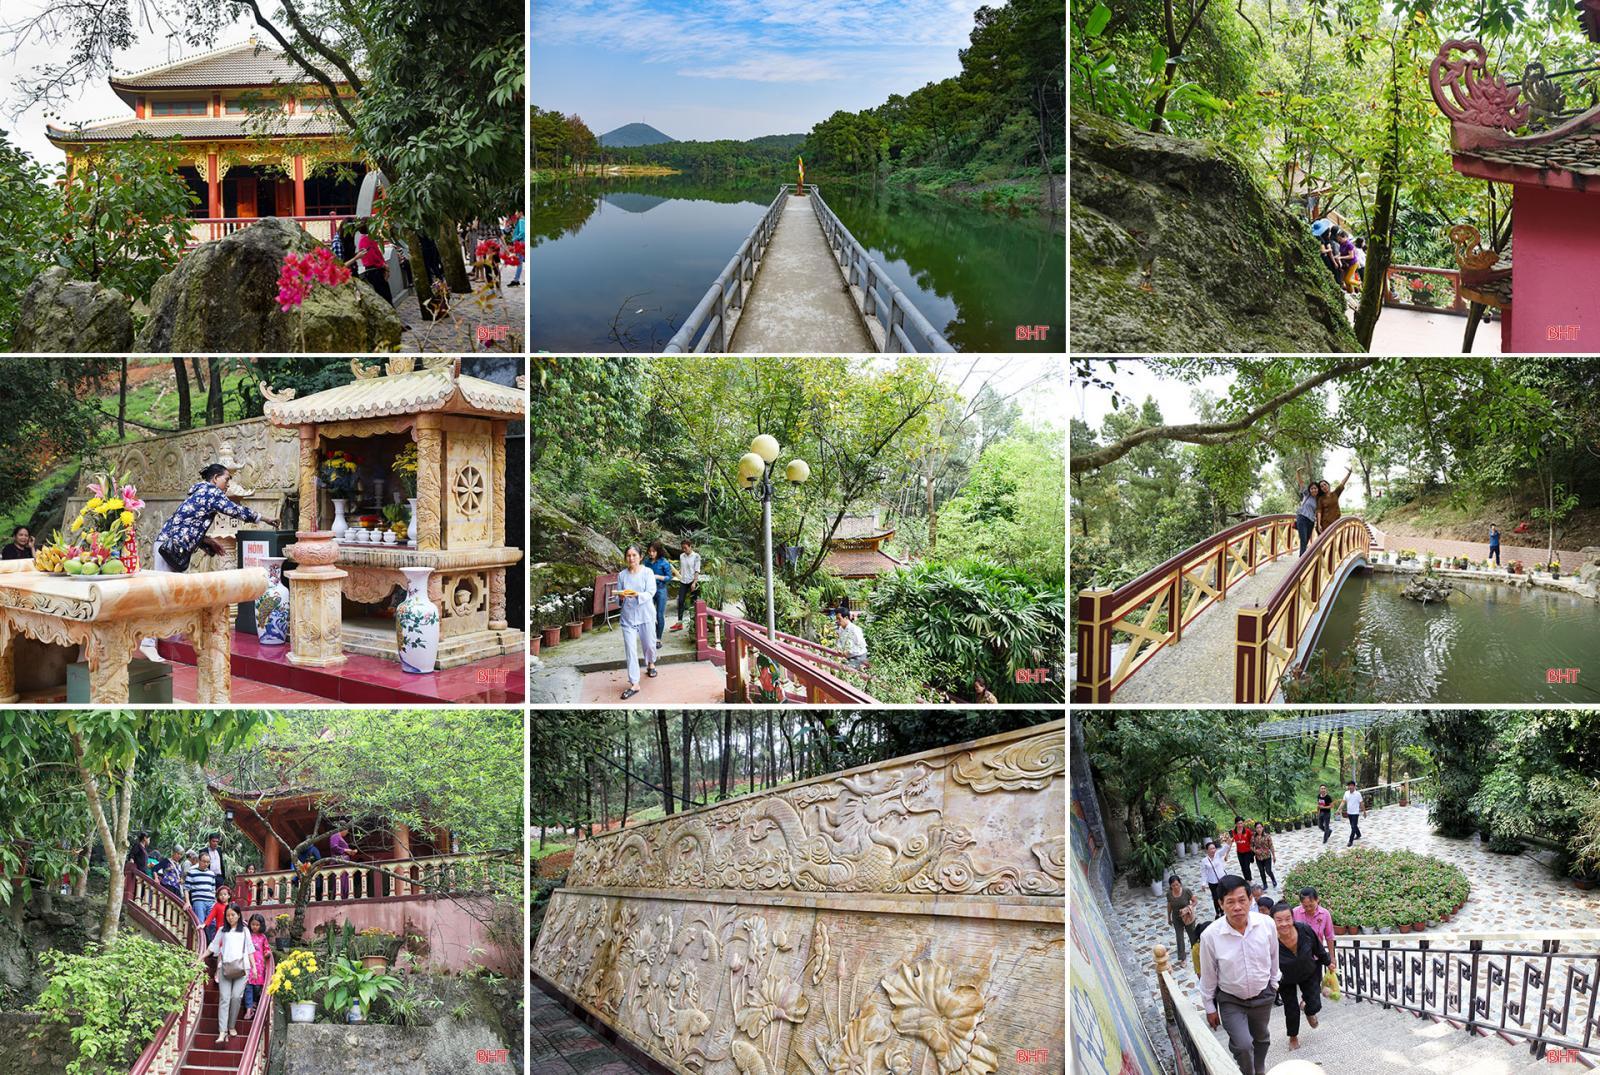 Di tích danh thắng Chùa Hang tọa lạc trên dãy núi Hồng Lĩnh thuộc phường Bắc Hồng, thị xã Hồng Lĩnh - Hà Tĩnh.